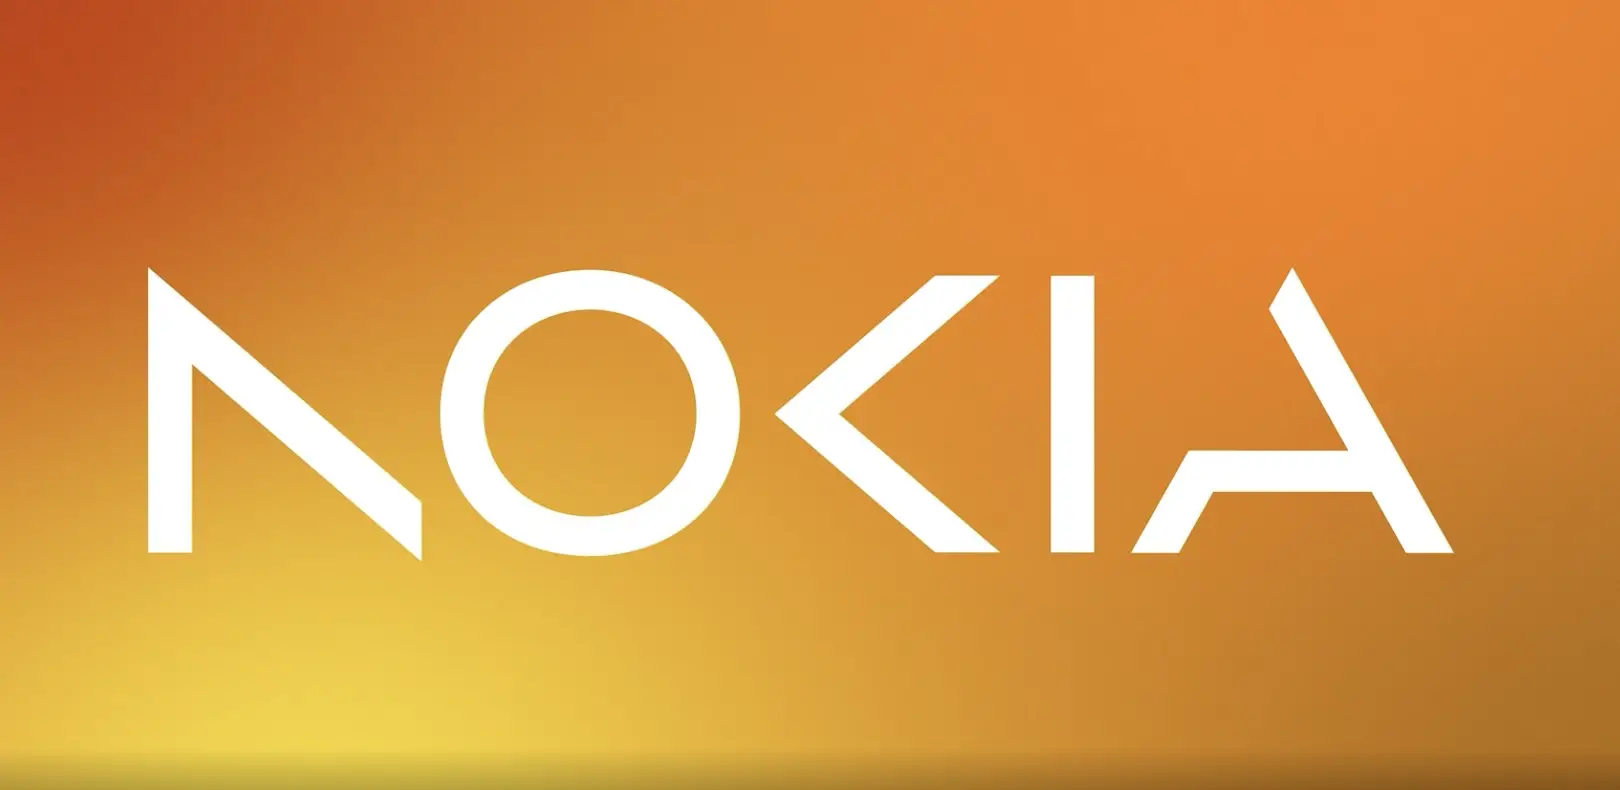 Nokia PHK 14 ribu karyawan